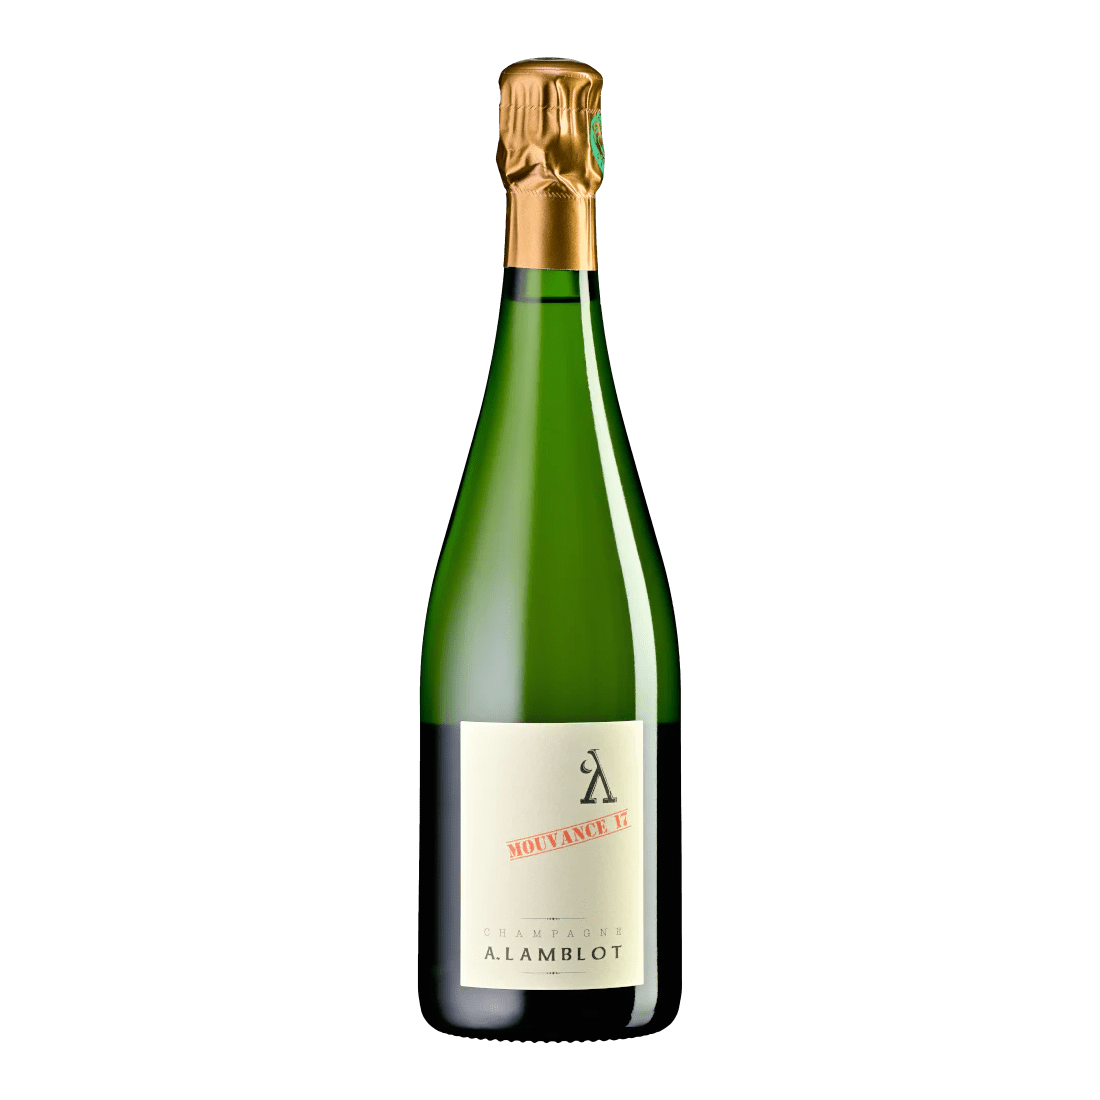 A. Lamblot, Mouvance 17, Champagne